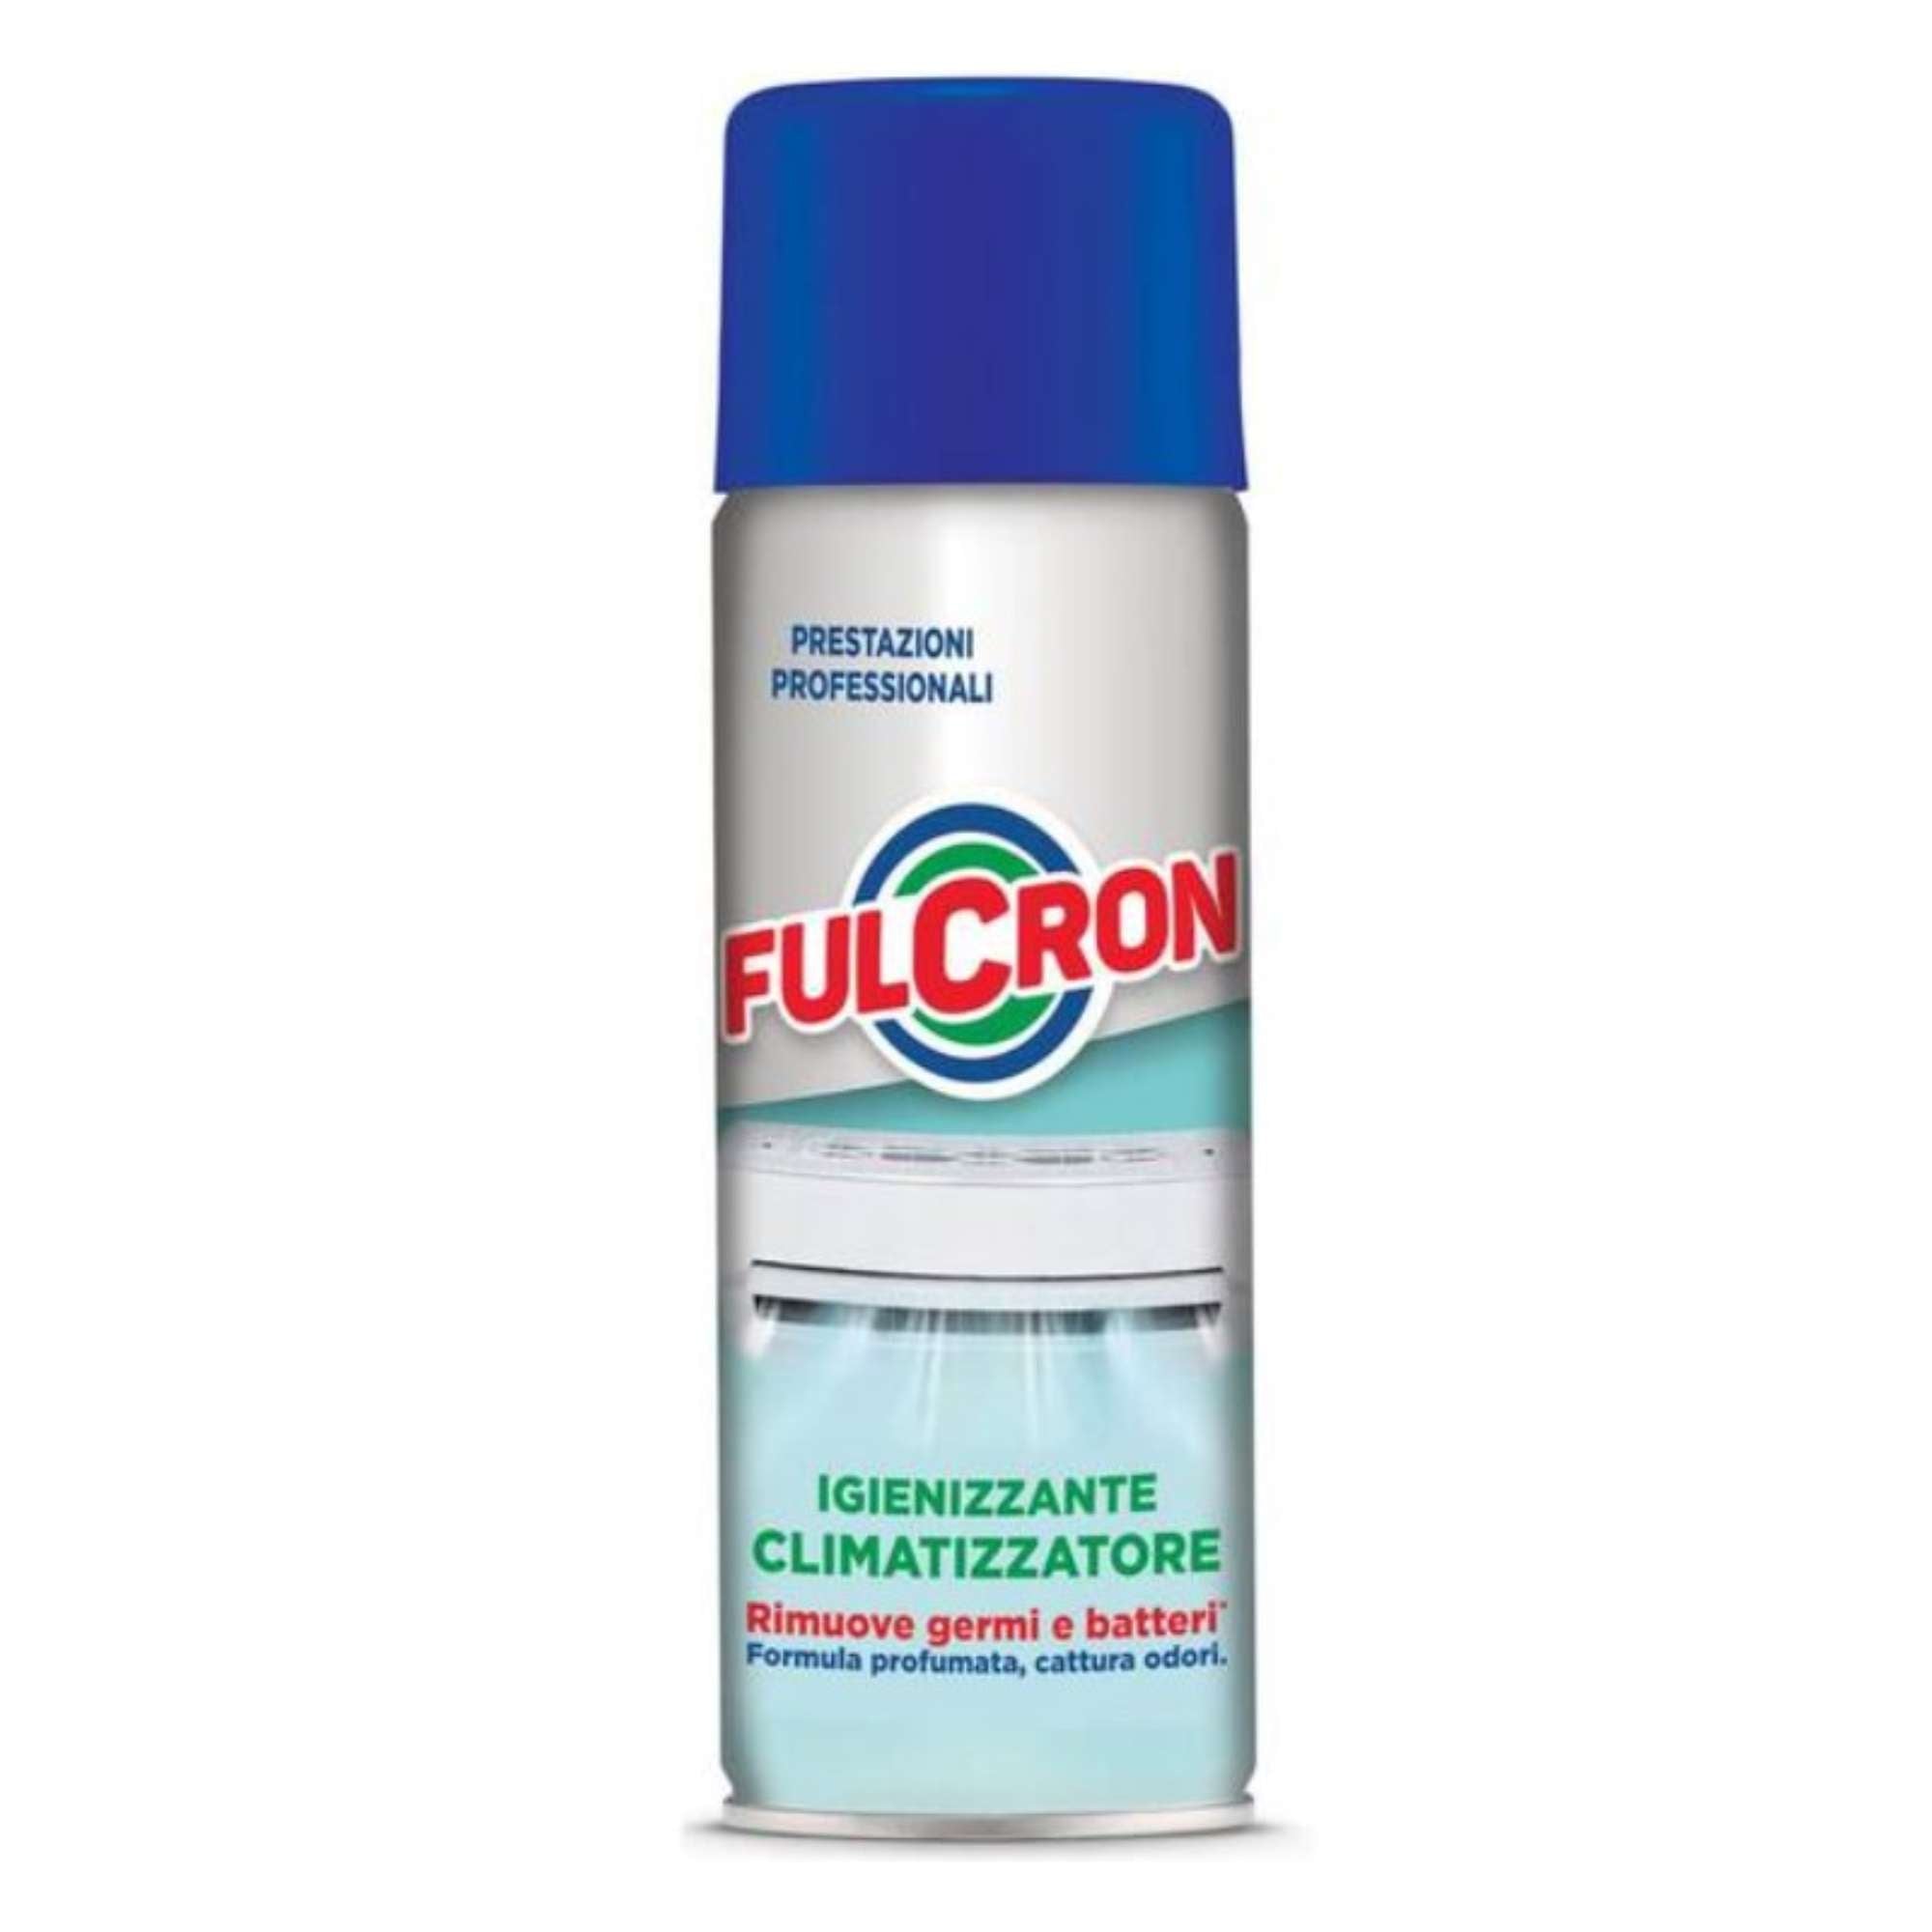 Fulcron Igienizzante climatizzatore 400 ml - Arexons 2568